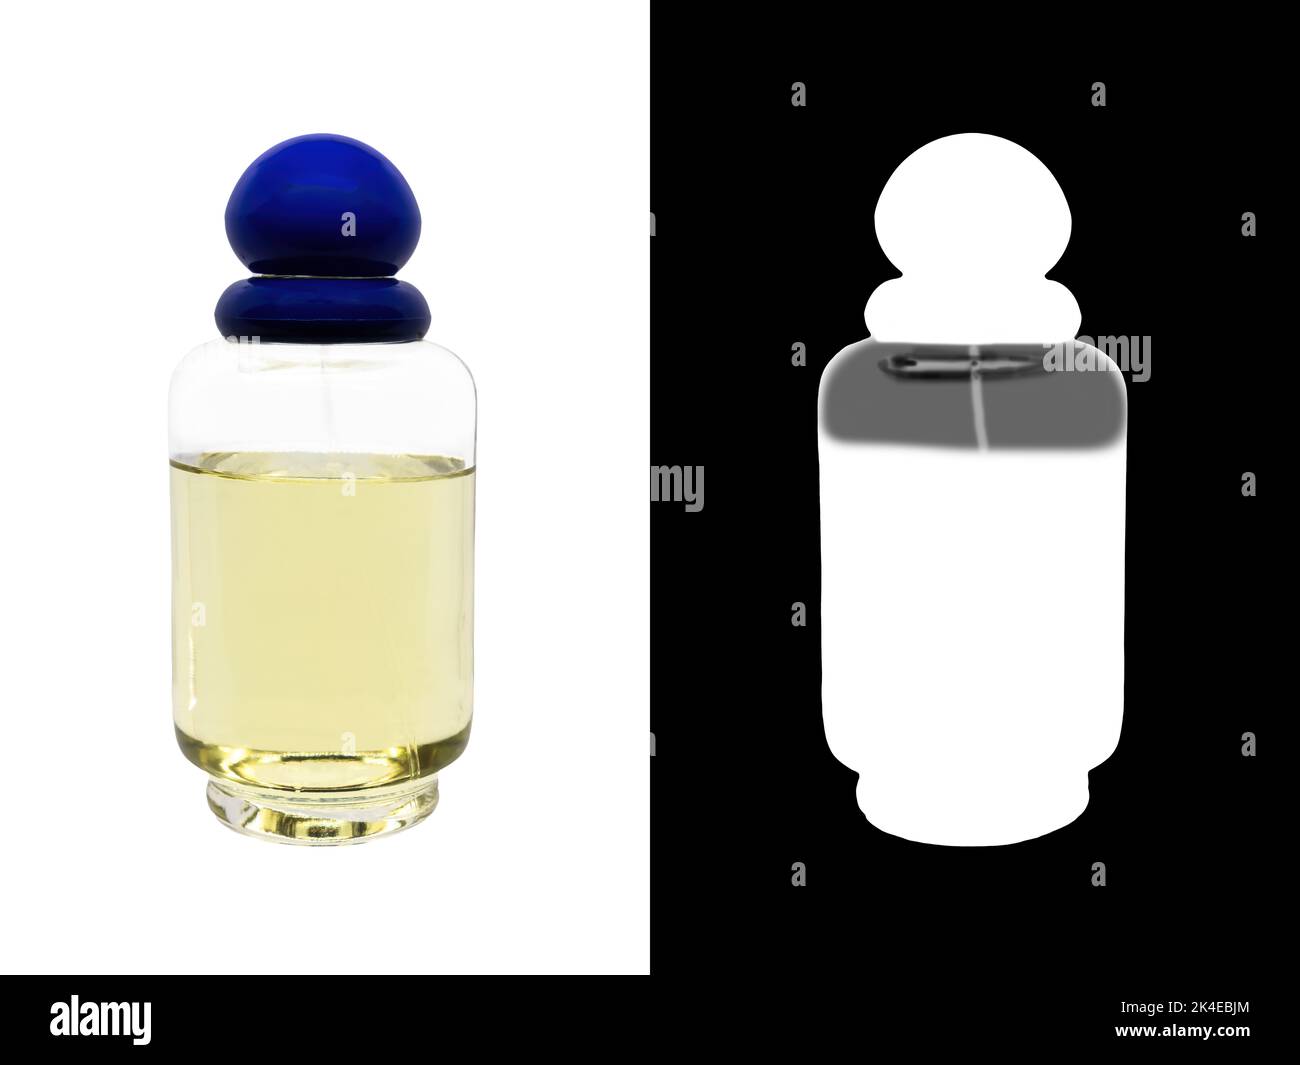 Bouteille de parfum de cologne féminin avec capuchon bleu pour une maquette avec passe-cheveux Banque D'Images